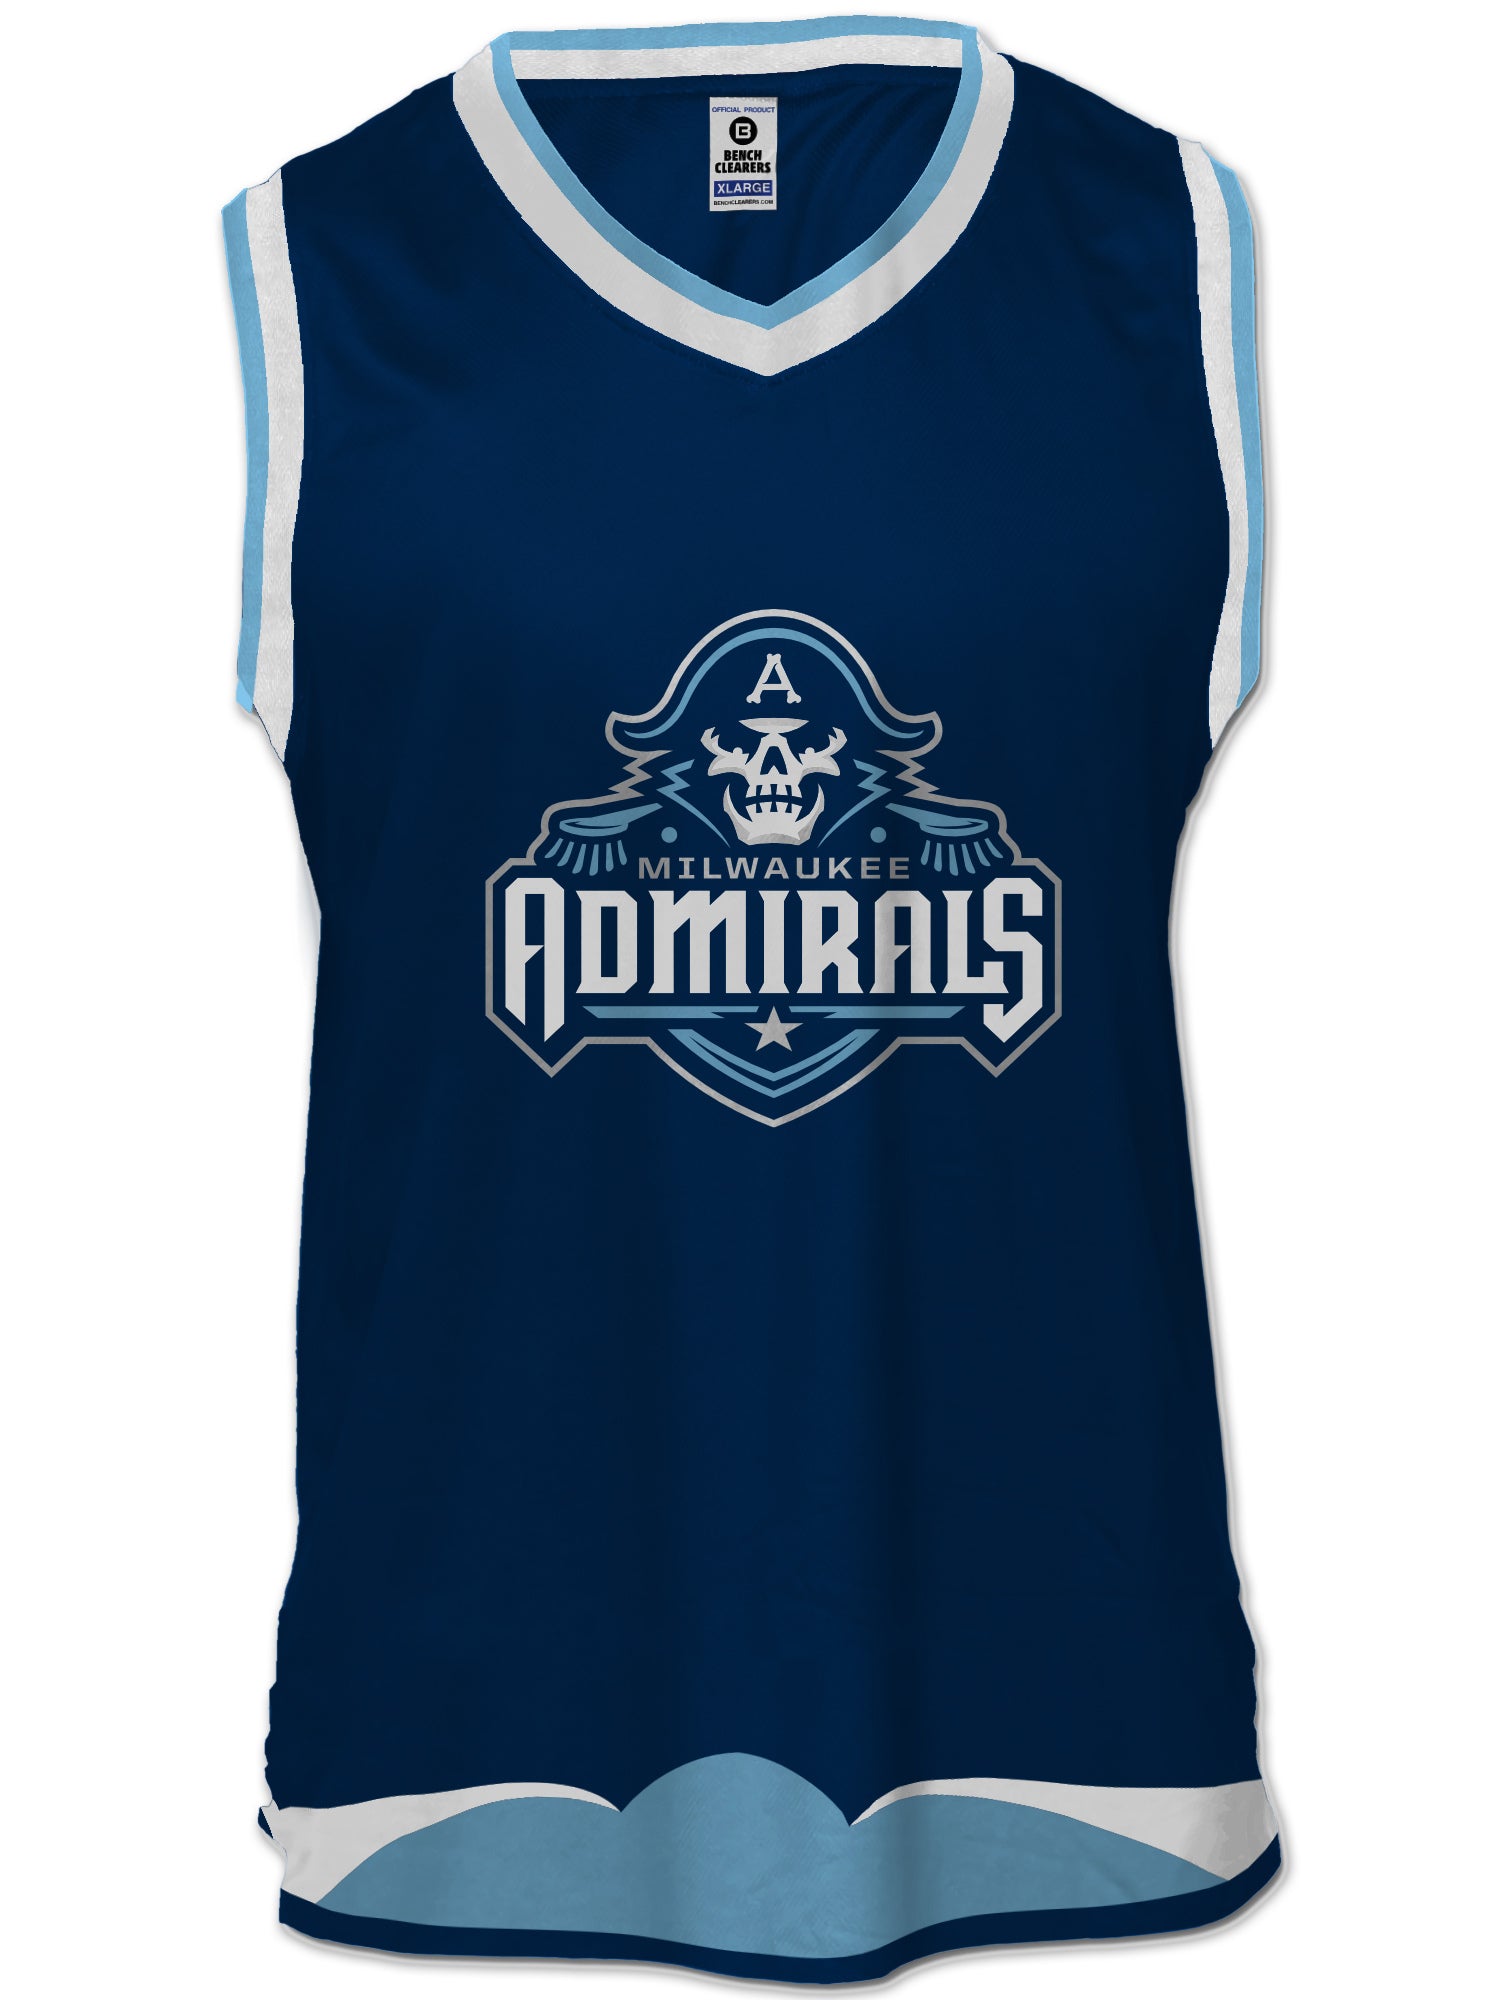 Milwaukee Admirals –